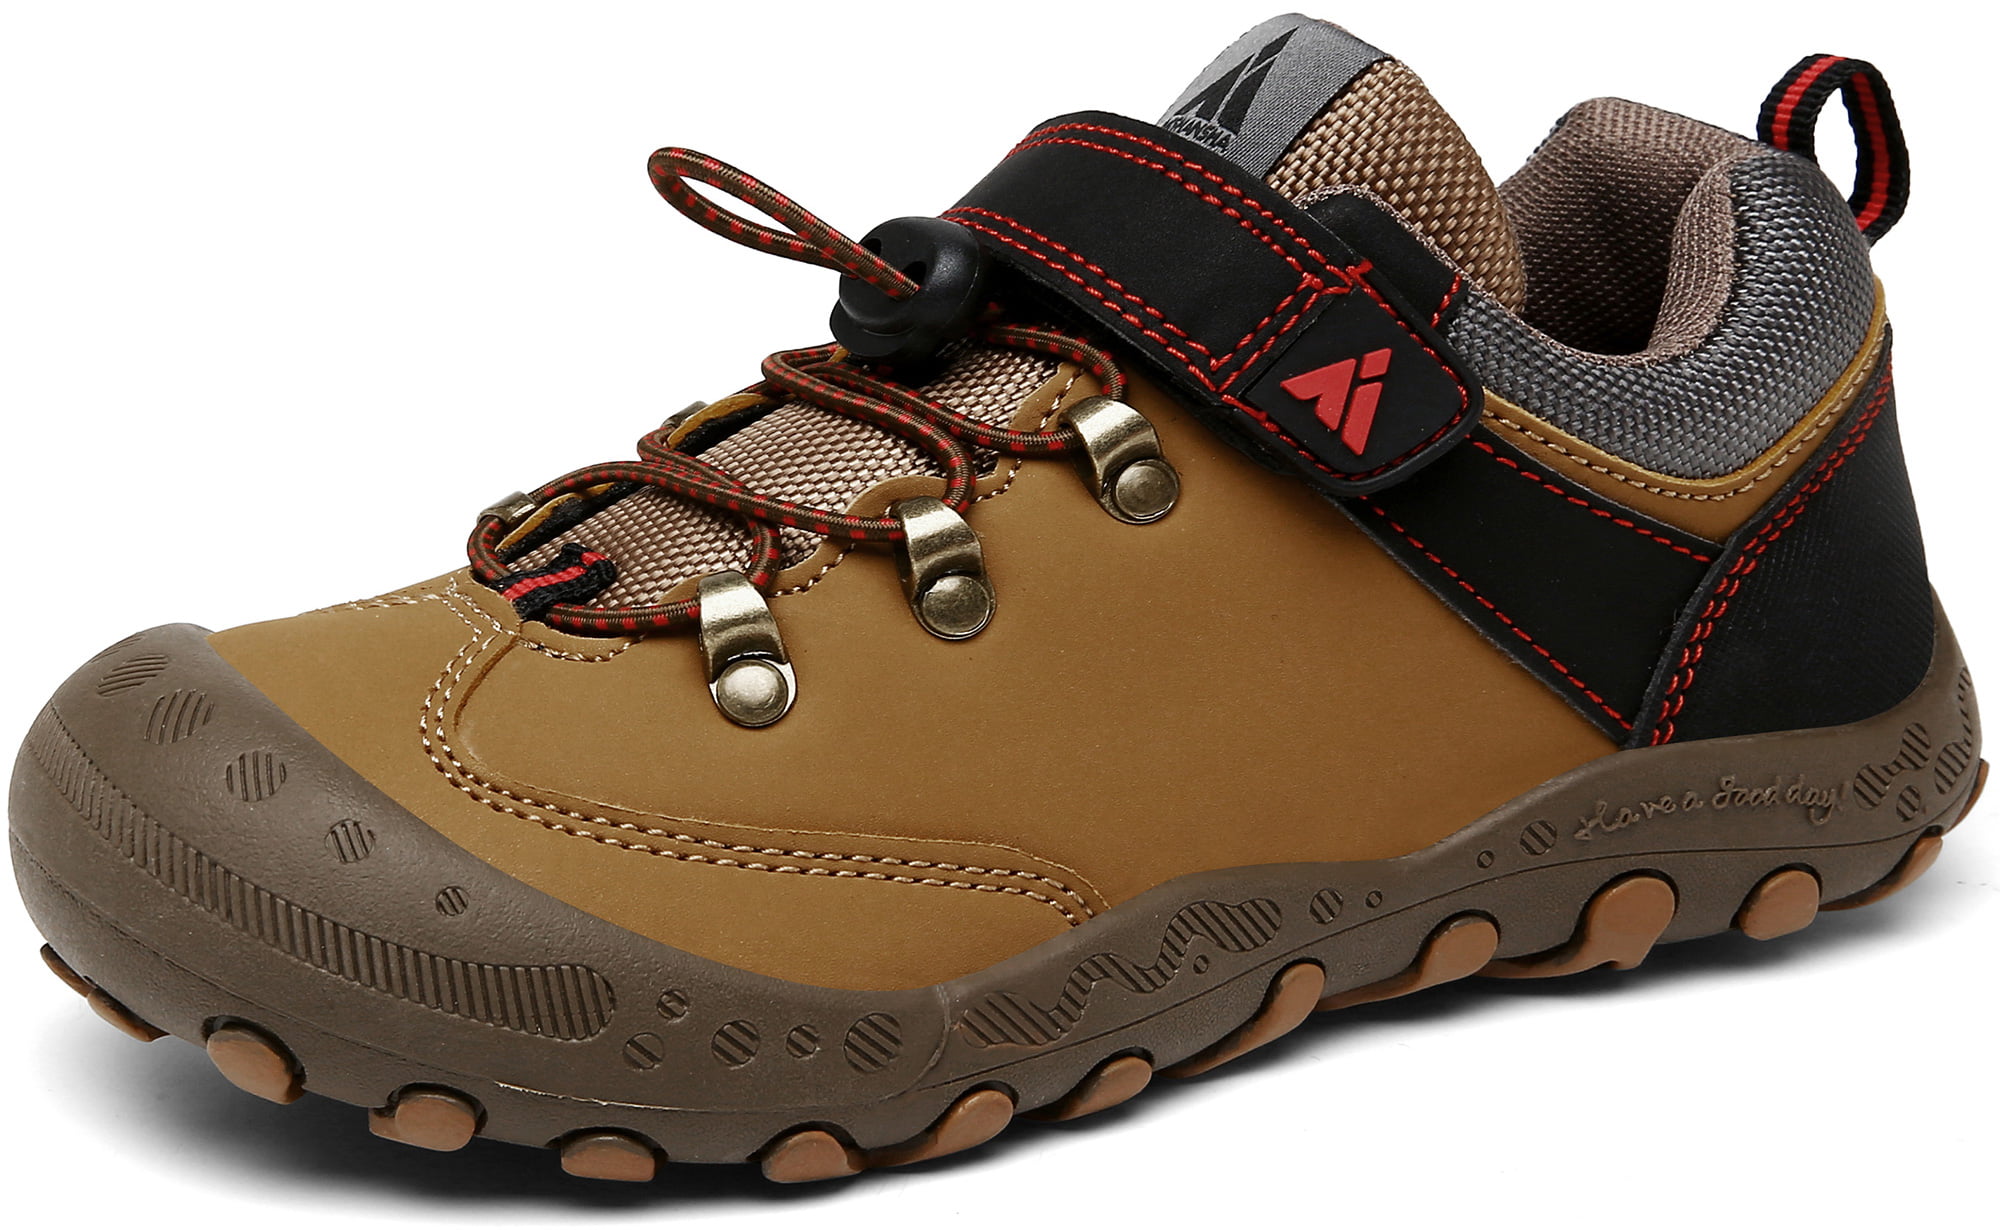 Mishansha Boys Girls Hiking Boots Anti-Slip Water Resistant Sneaker Kids Running Walking Shoes 